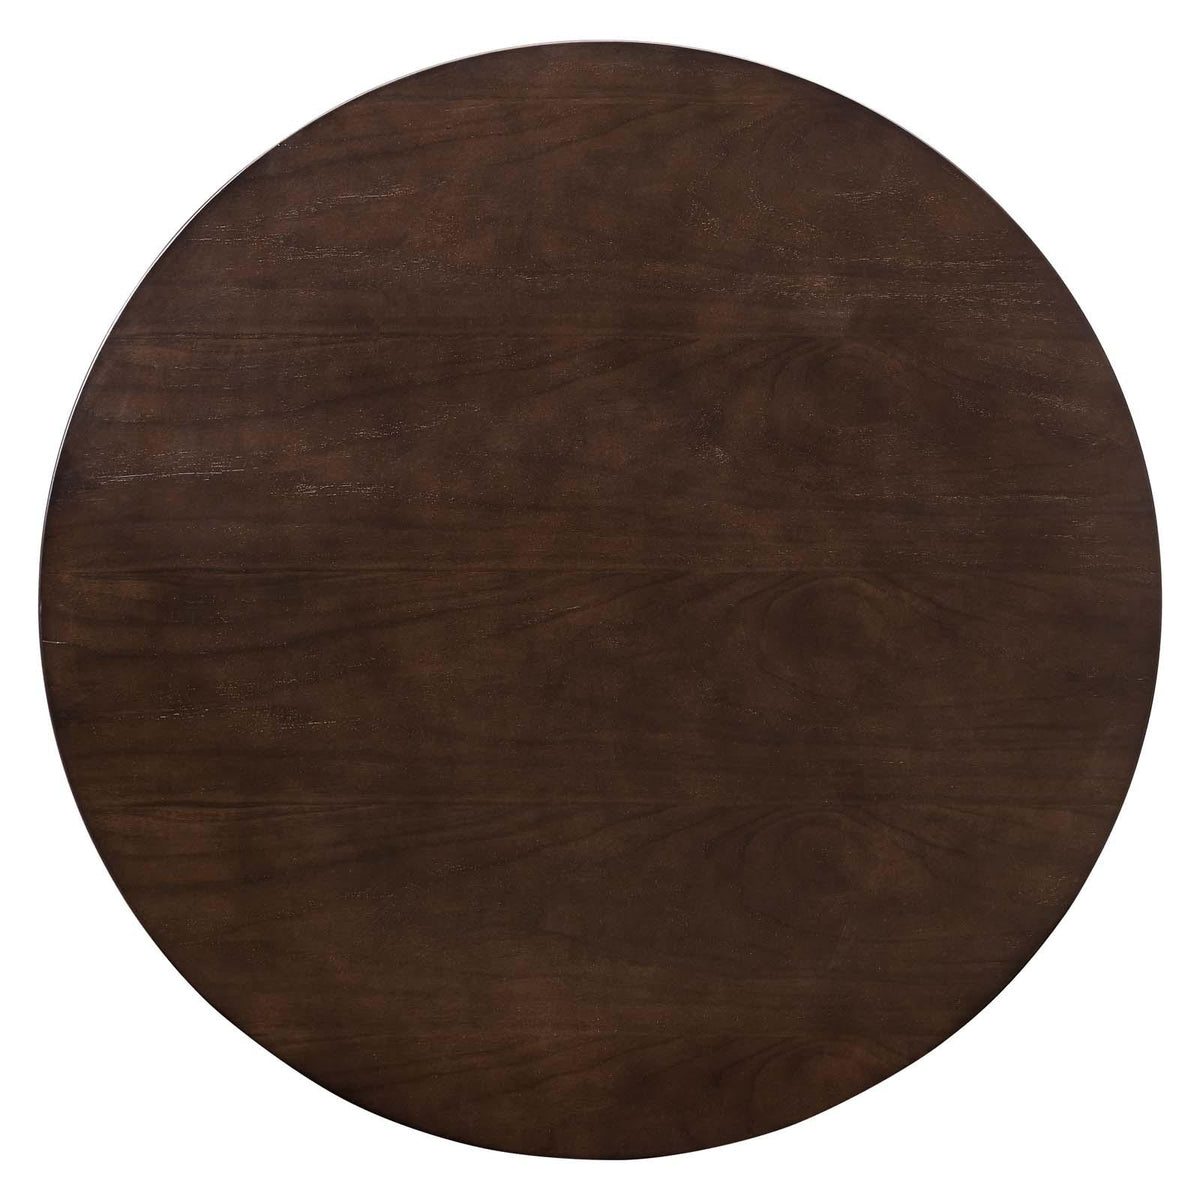 Modway Furniture Modern Lippa 36" Wood Coffee Table - EEI-5244